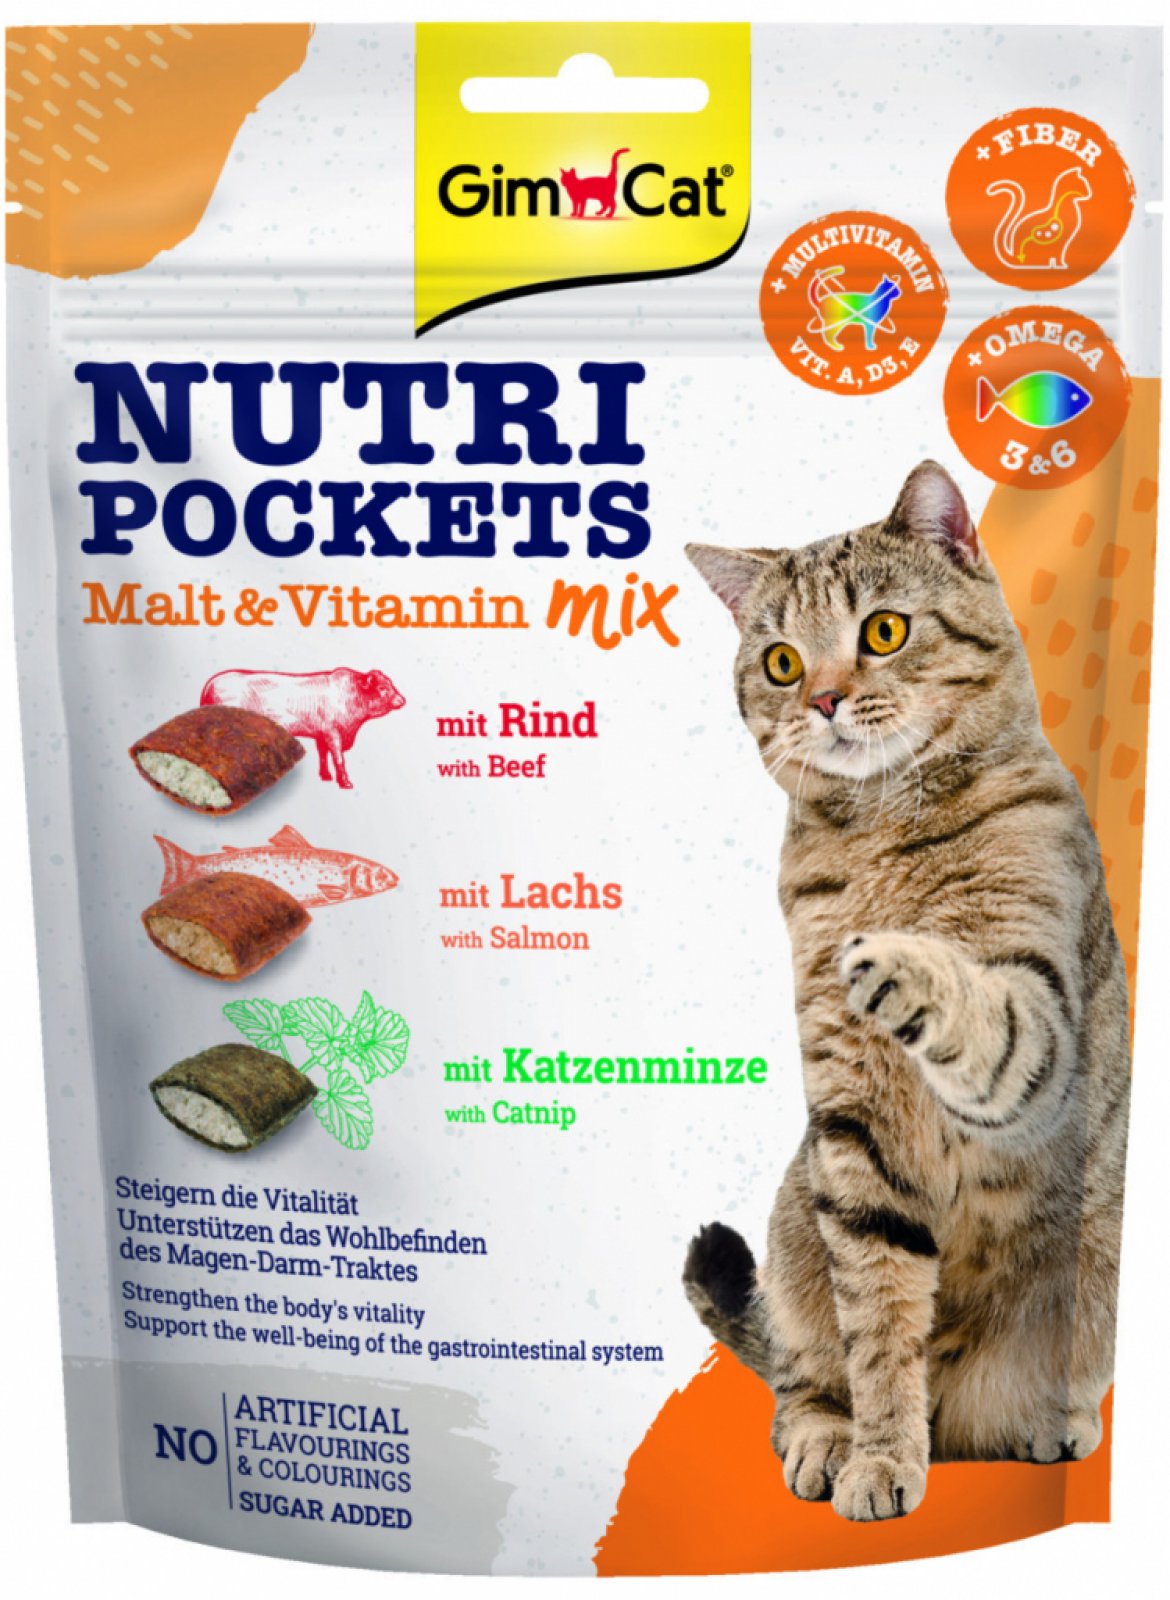 GimCat Nutri Pockets malt & vitamin mix 150g